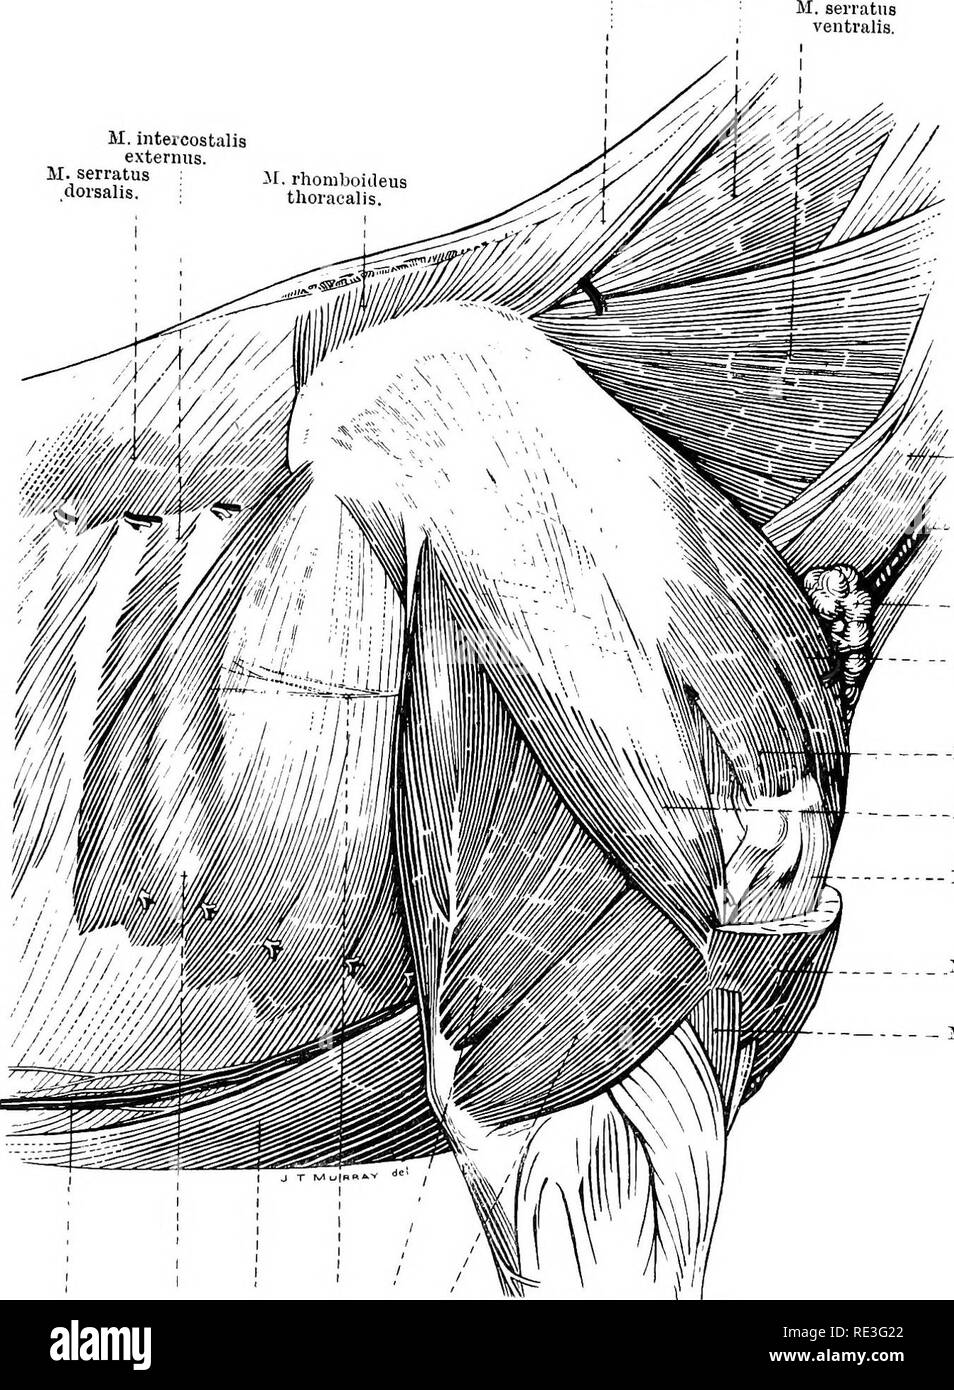 . The topographical anatomy of the limbs of the horse. Horses; Physiology. THE LIMBS OF THE HOESE 11 il.rhomboideus cervicalis. M. splenius. M. intercostalia externus. M.serratus M, rhomboideus .&quot;&quot;â sails- thoracalis.. M. omohyoideus. V. jugularis. Superficial cervical lymph glands. M. pectoral is pro- fundus (pars praescapularis). -M. supraspinatus. iM. deltoideus. M. biceps brachii. 51. brachio- cephalicus. M. brachialis. II. triceps brachii (caput laterale). M triceps biachii (caput longum). N. thorar-alis longus. i ^S. pectoralis prof und us (pars h umeralis). il, serratus vontra Stock Photo